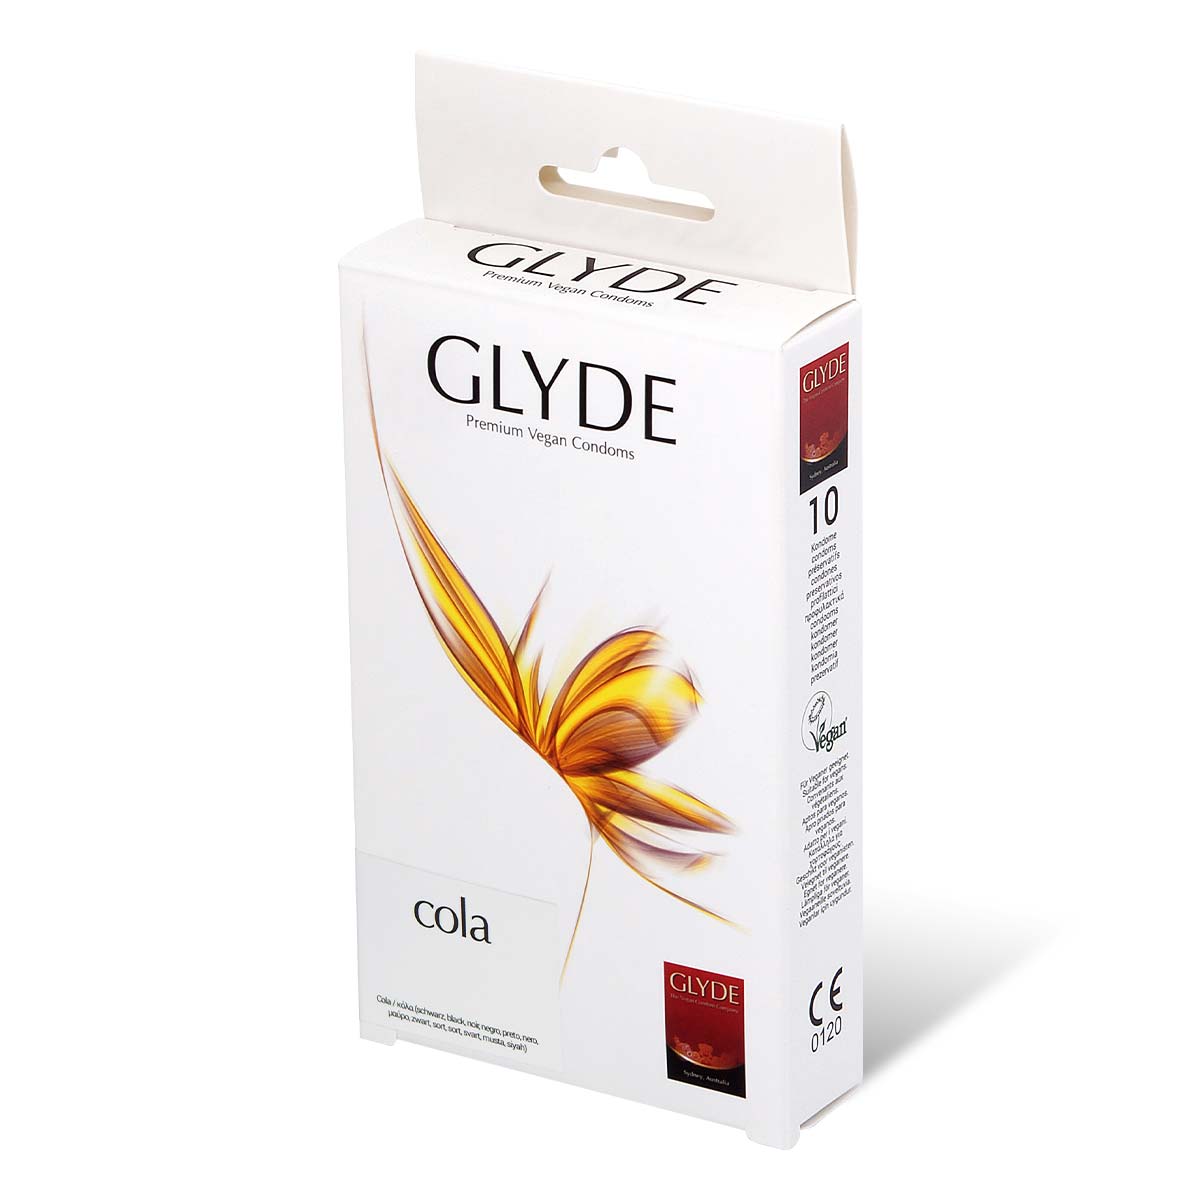 Glyde Vegan Condom Cola 10's Pack Latex Condom-p_1